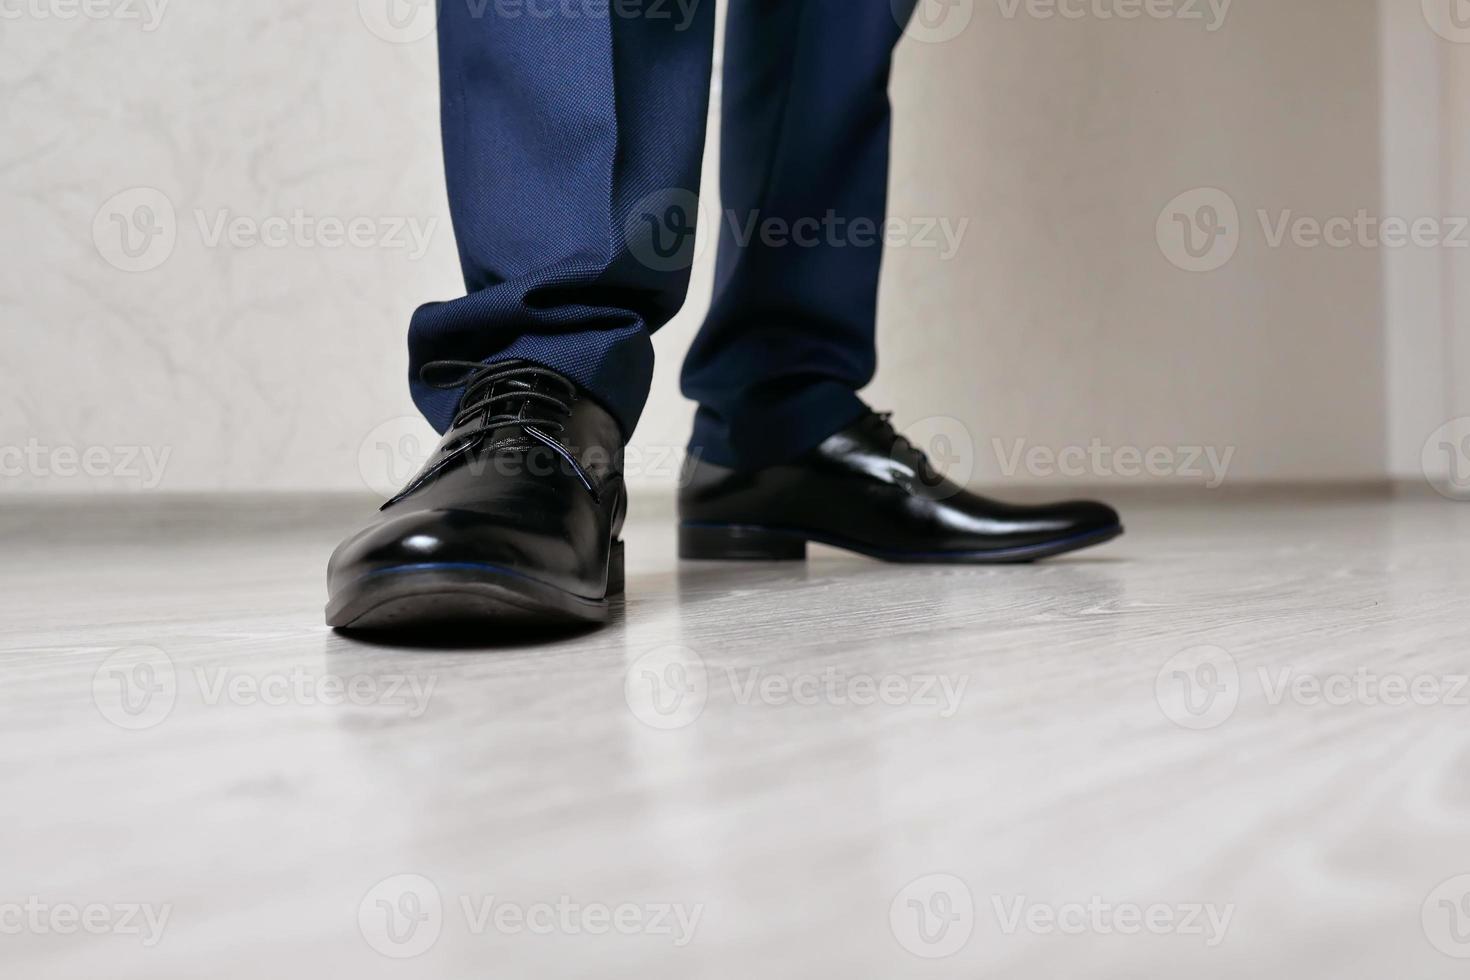 pieds d'hommes en gros plan de chaussures noires photo